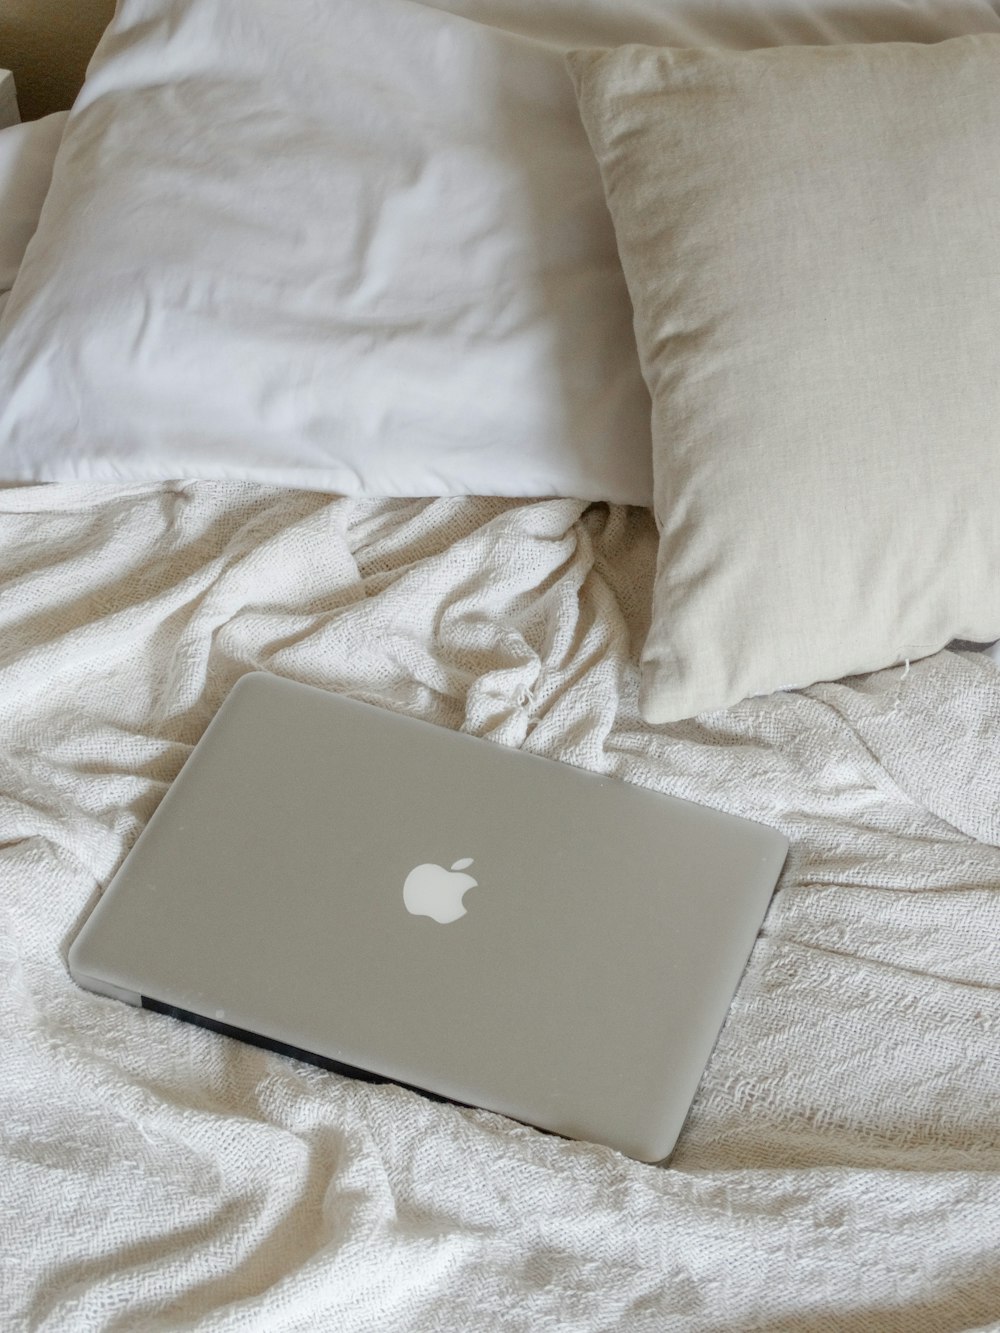 MacBook argenté sur textile blanc